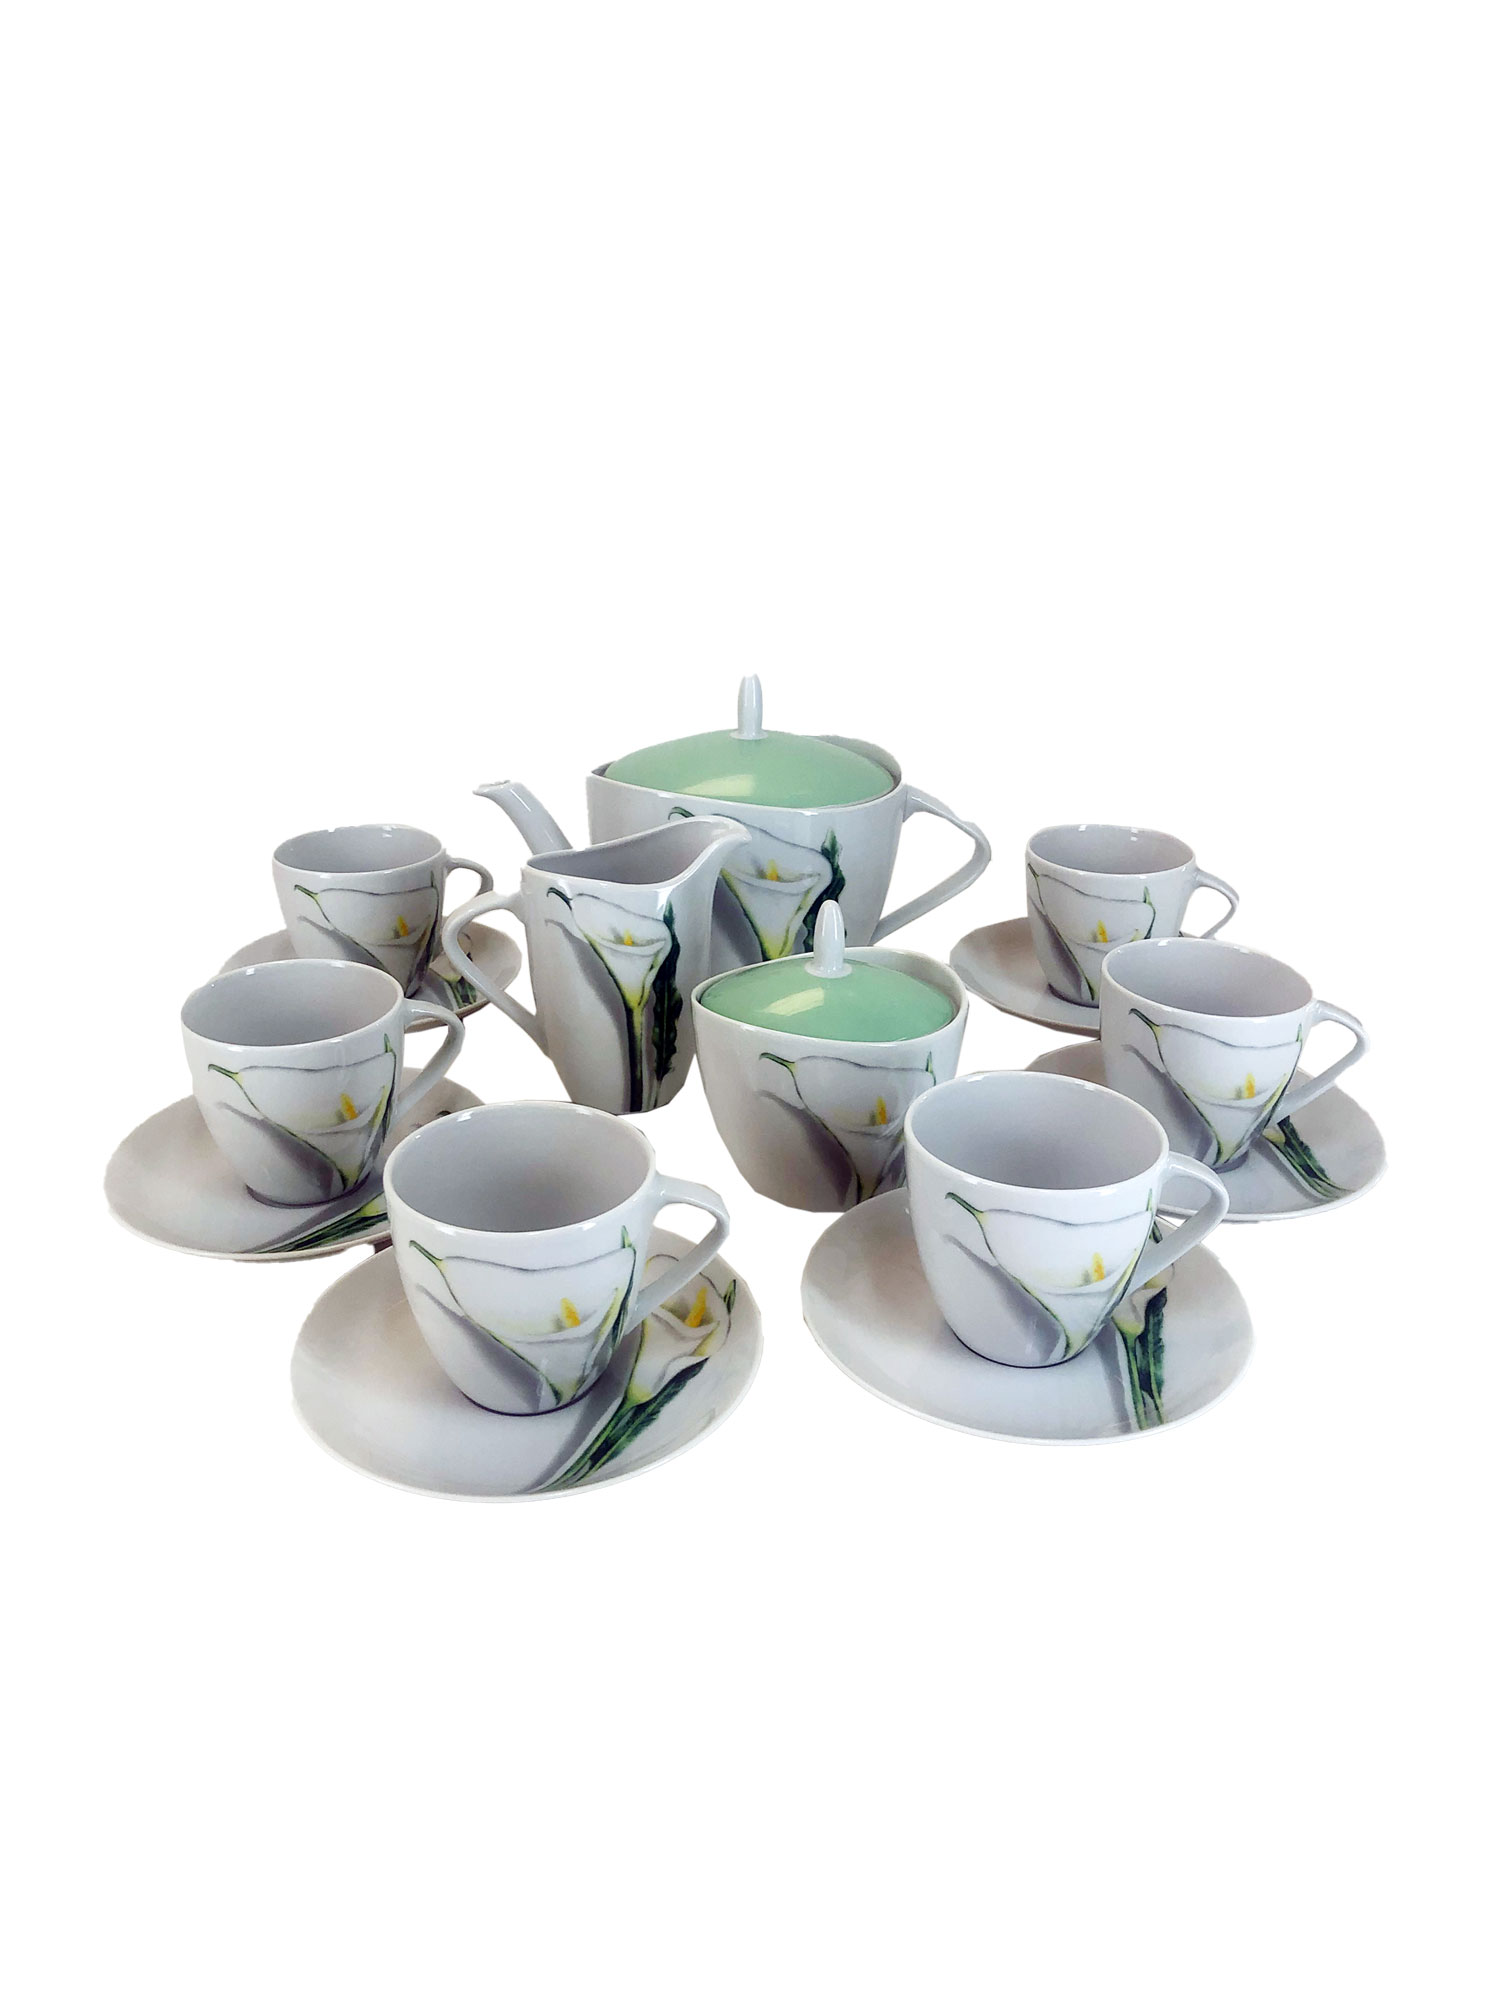 Чайный сервиз на 6 персон 17 предметов Silvia декор Каллы. Фарфор Тхун, Чехия.